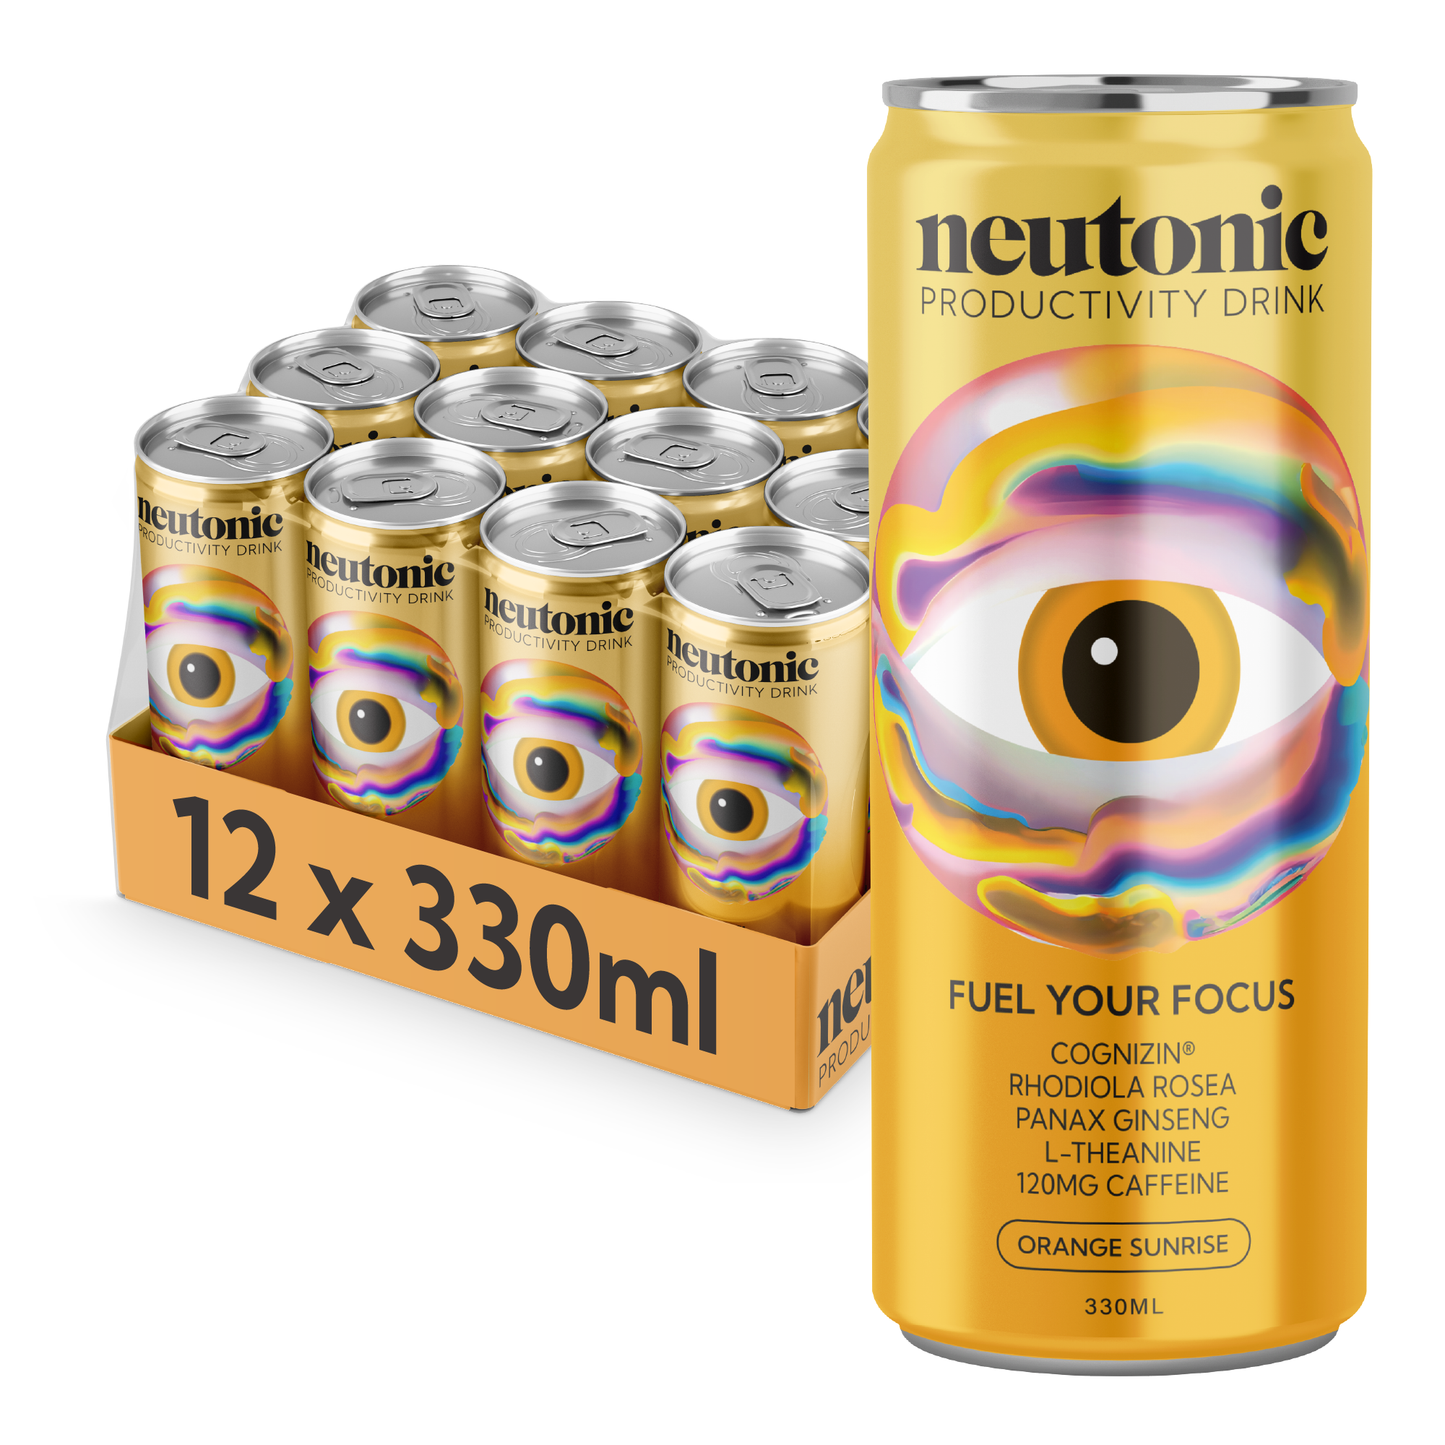 Neutonic - Product image Orange